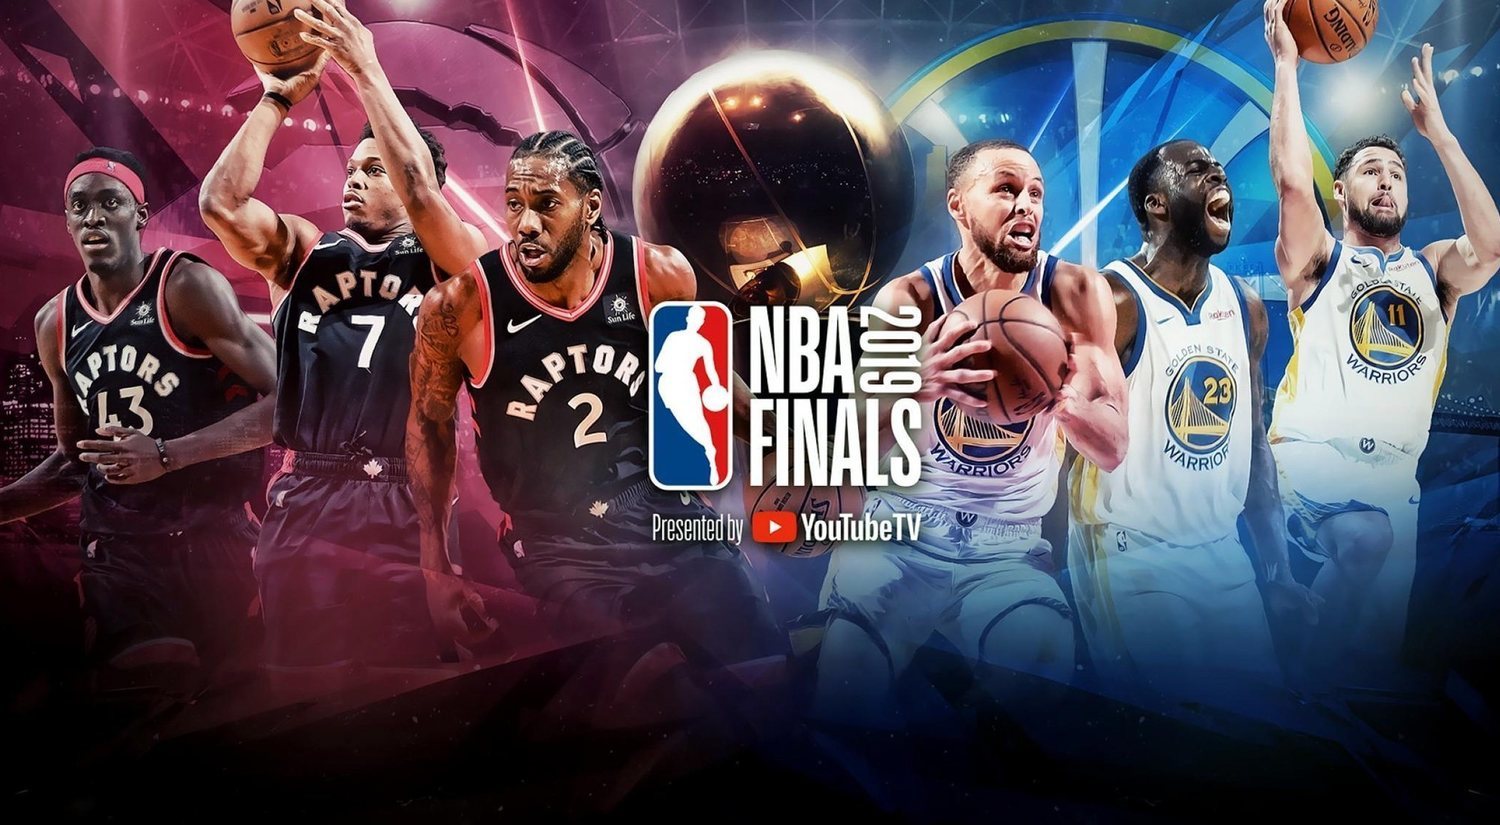 Finales NBA 2019: ¿Raptors o Warriors? El mejor análisis